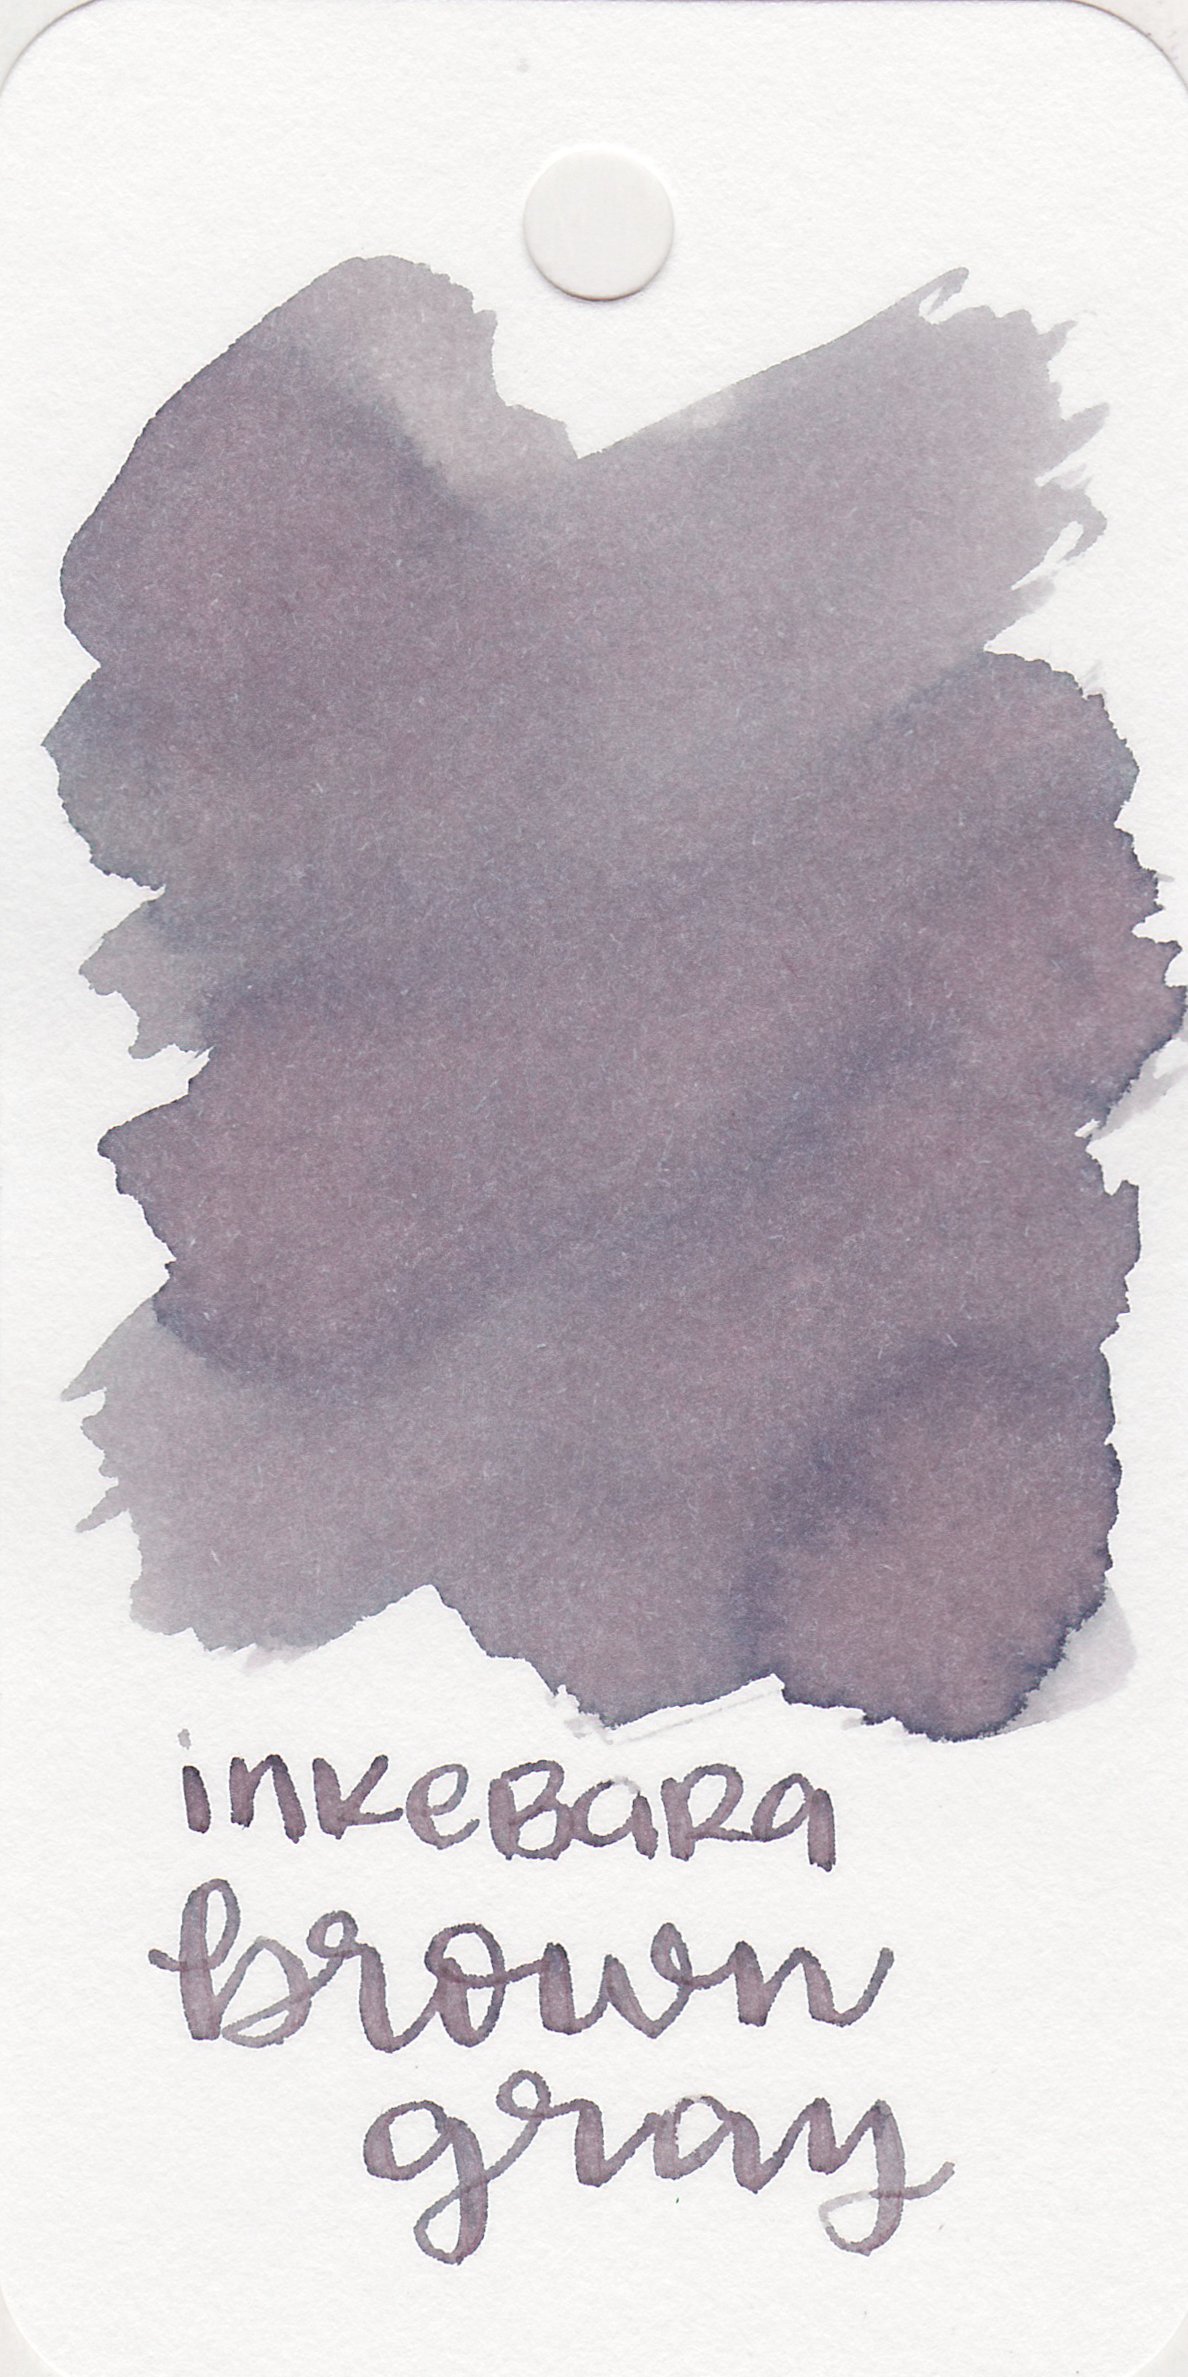 ink-brown-gray-1.jpg